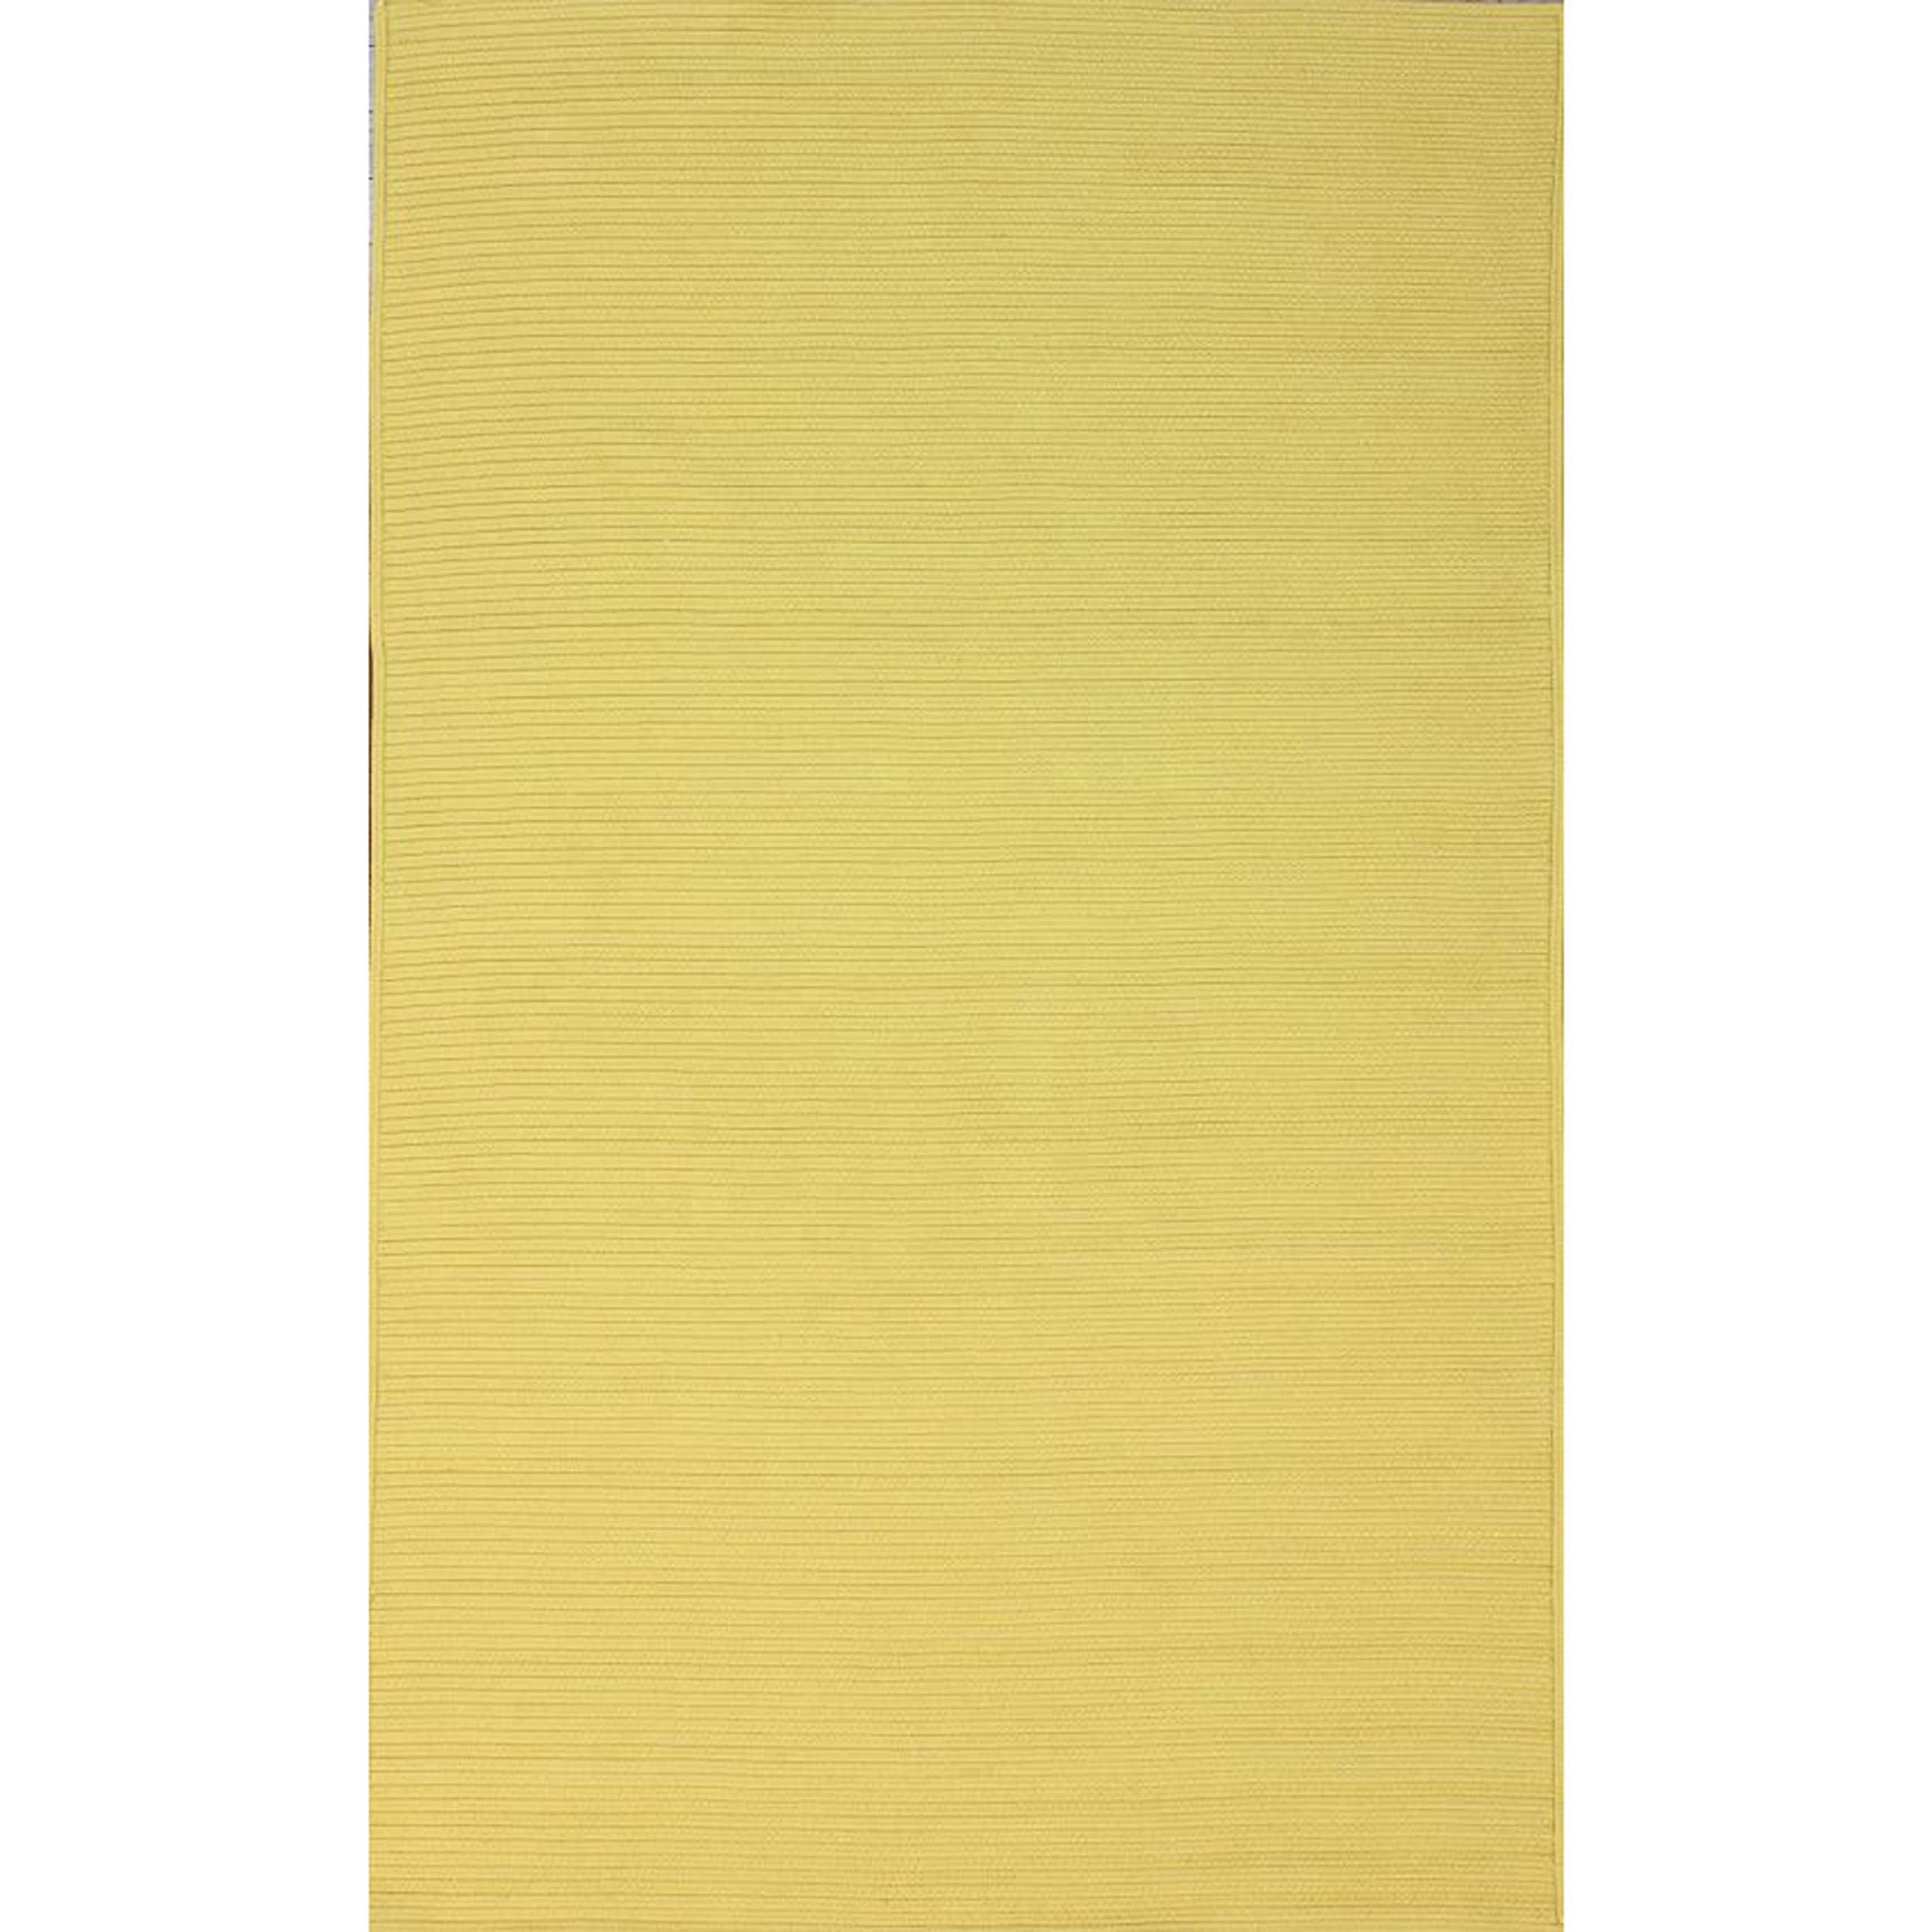 Nuloom Handmade Indoor/ Outdoor Braided Yellow Rug (5 X 8)